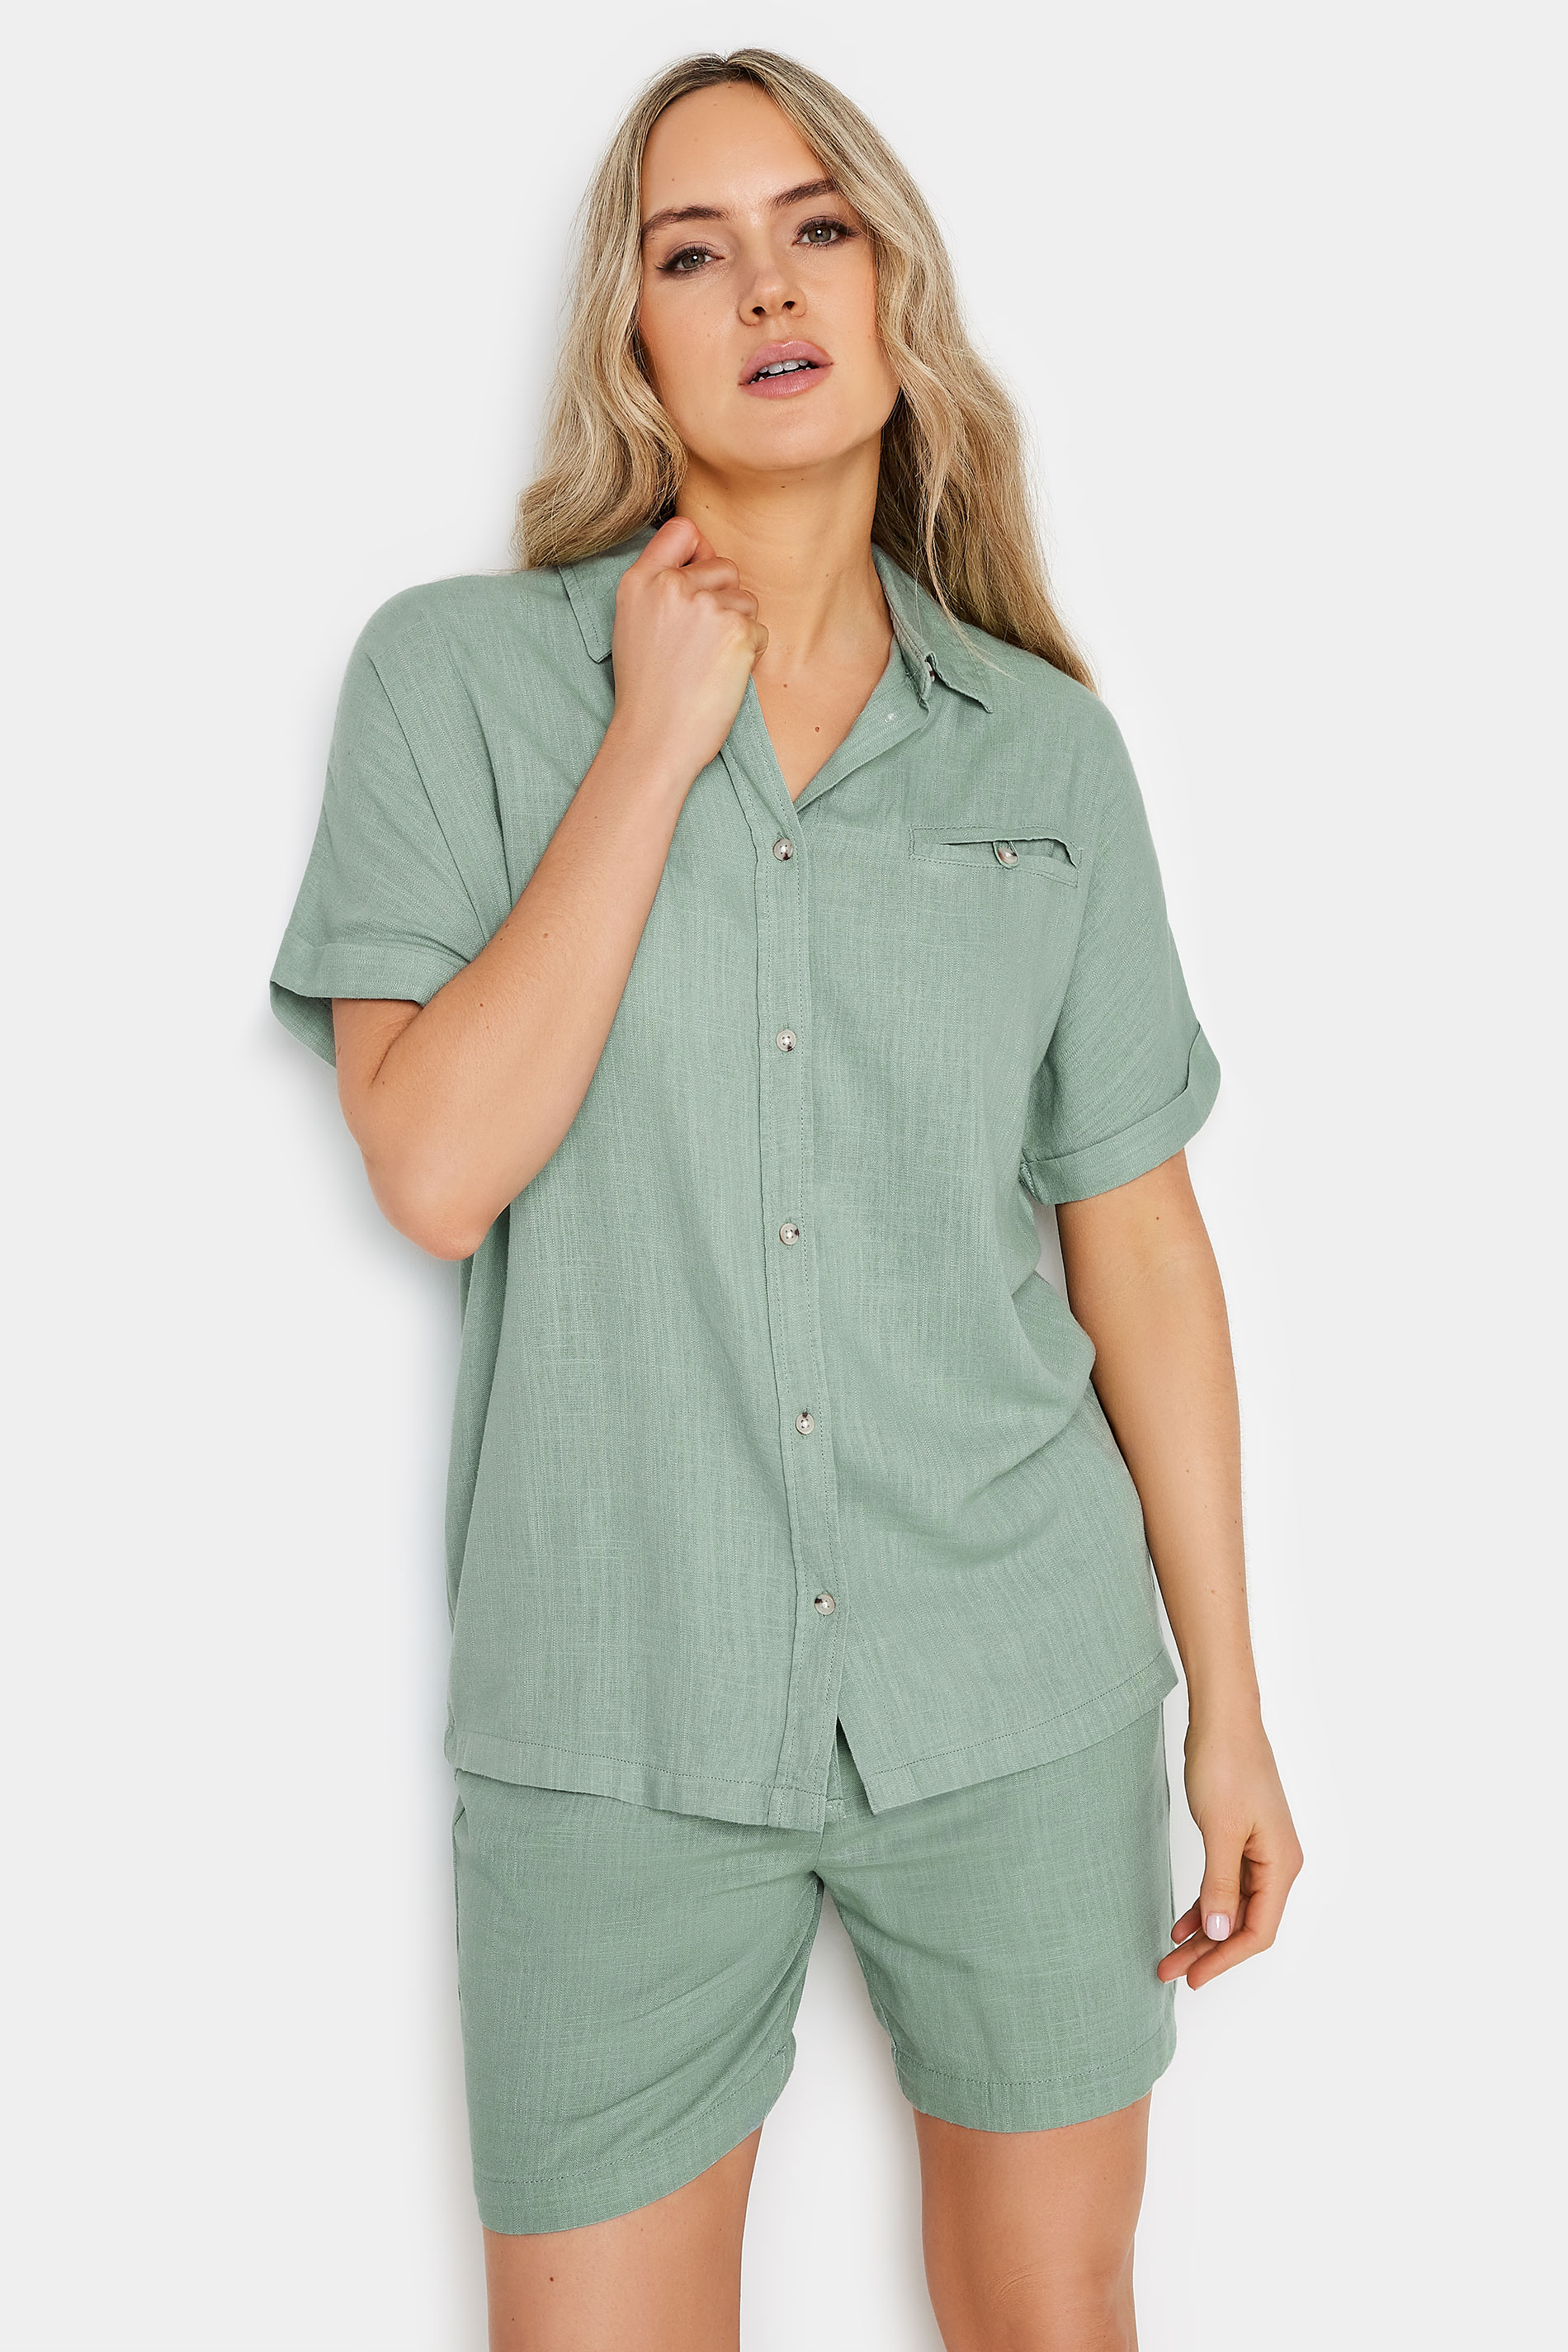 LTS Tall Womens Sage Green Linen Short Sleeve Shirt | Long Tall Sally 1